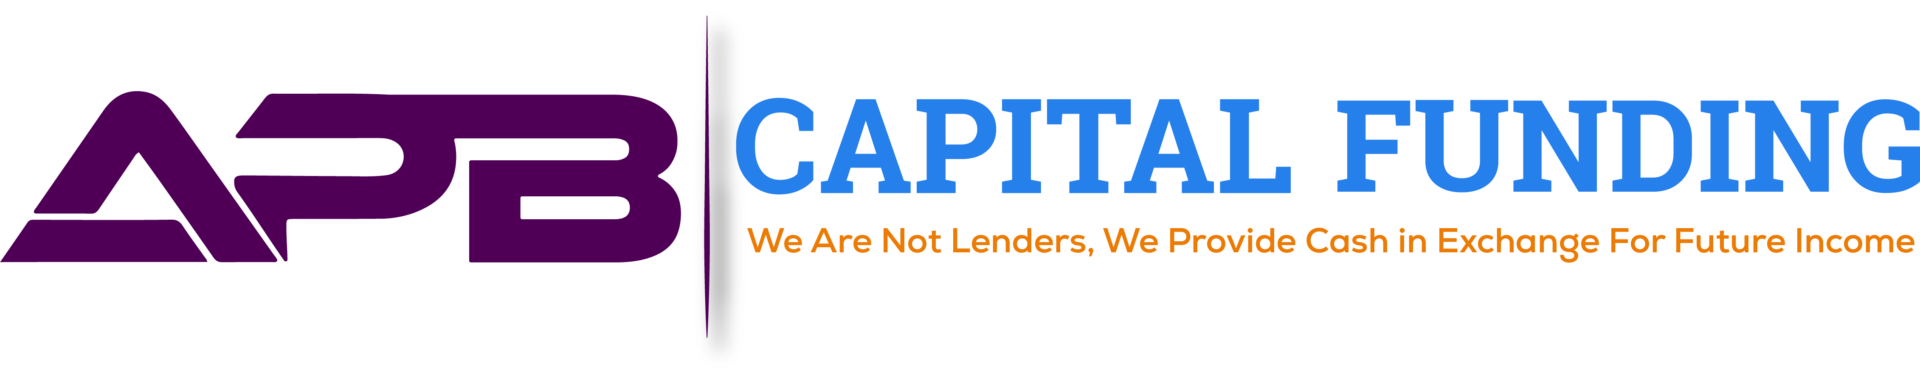 APB Capital Funding logo